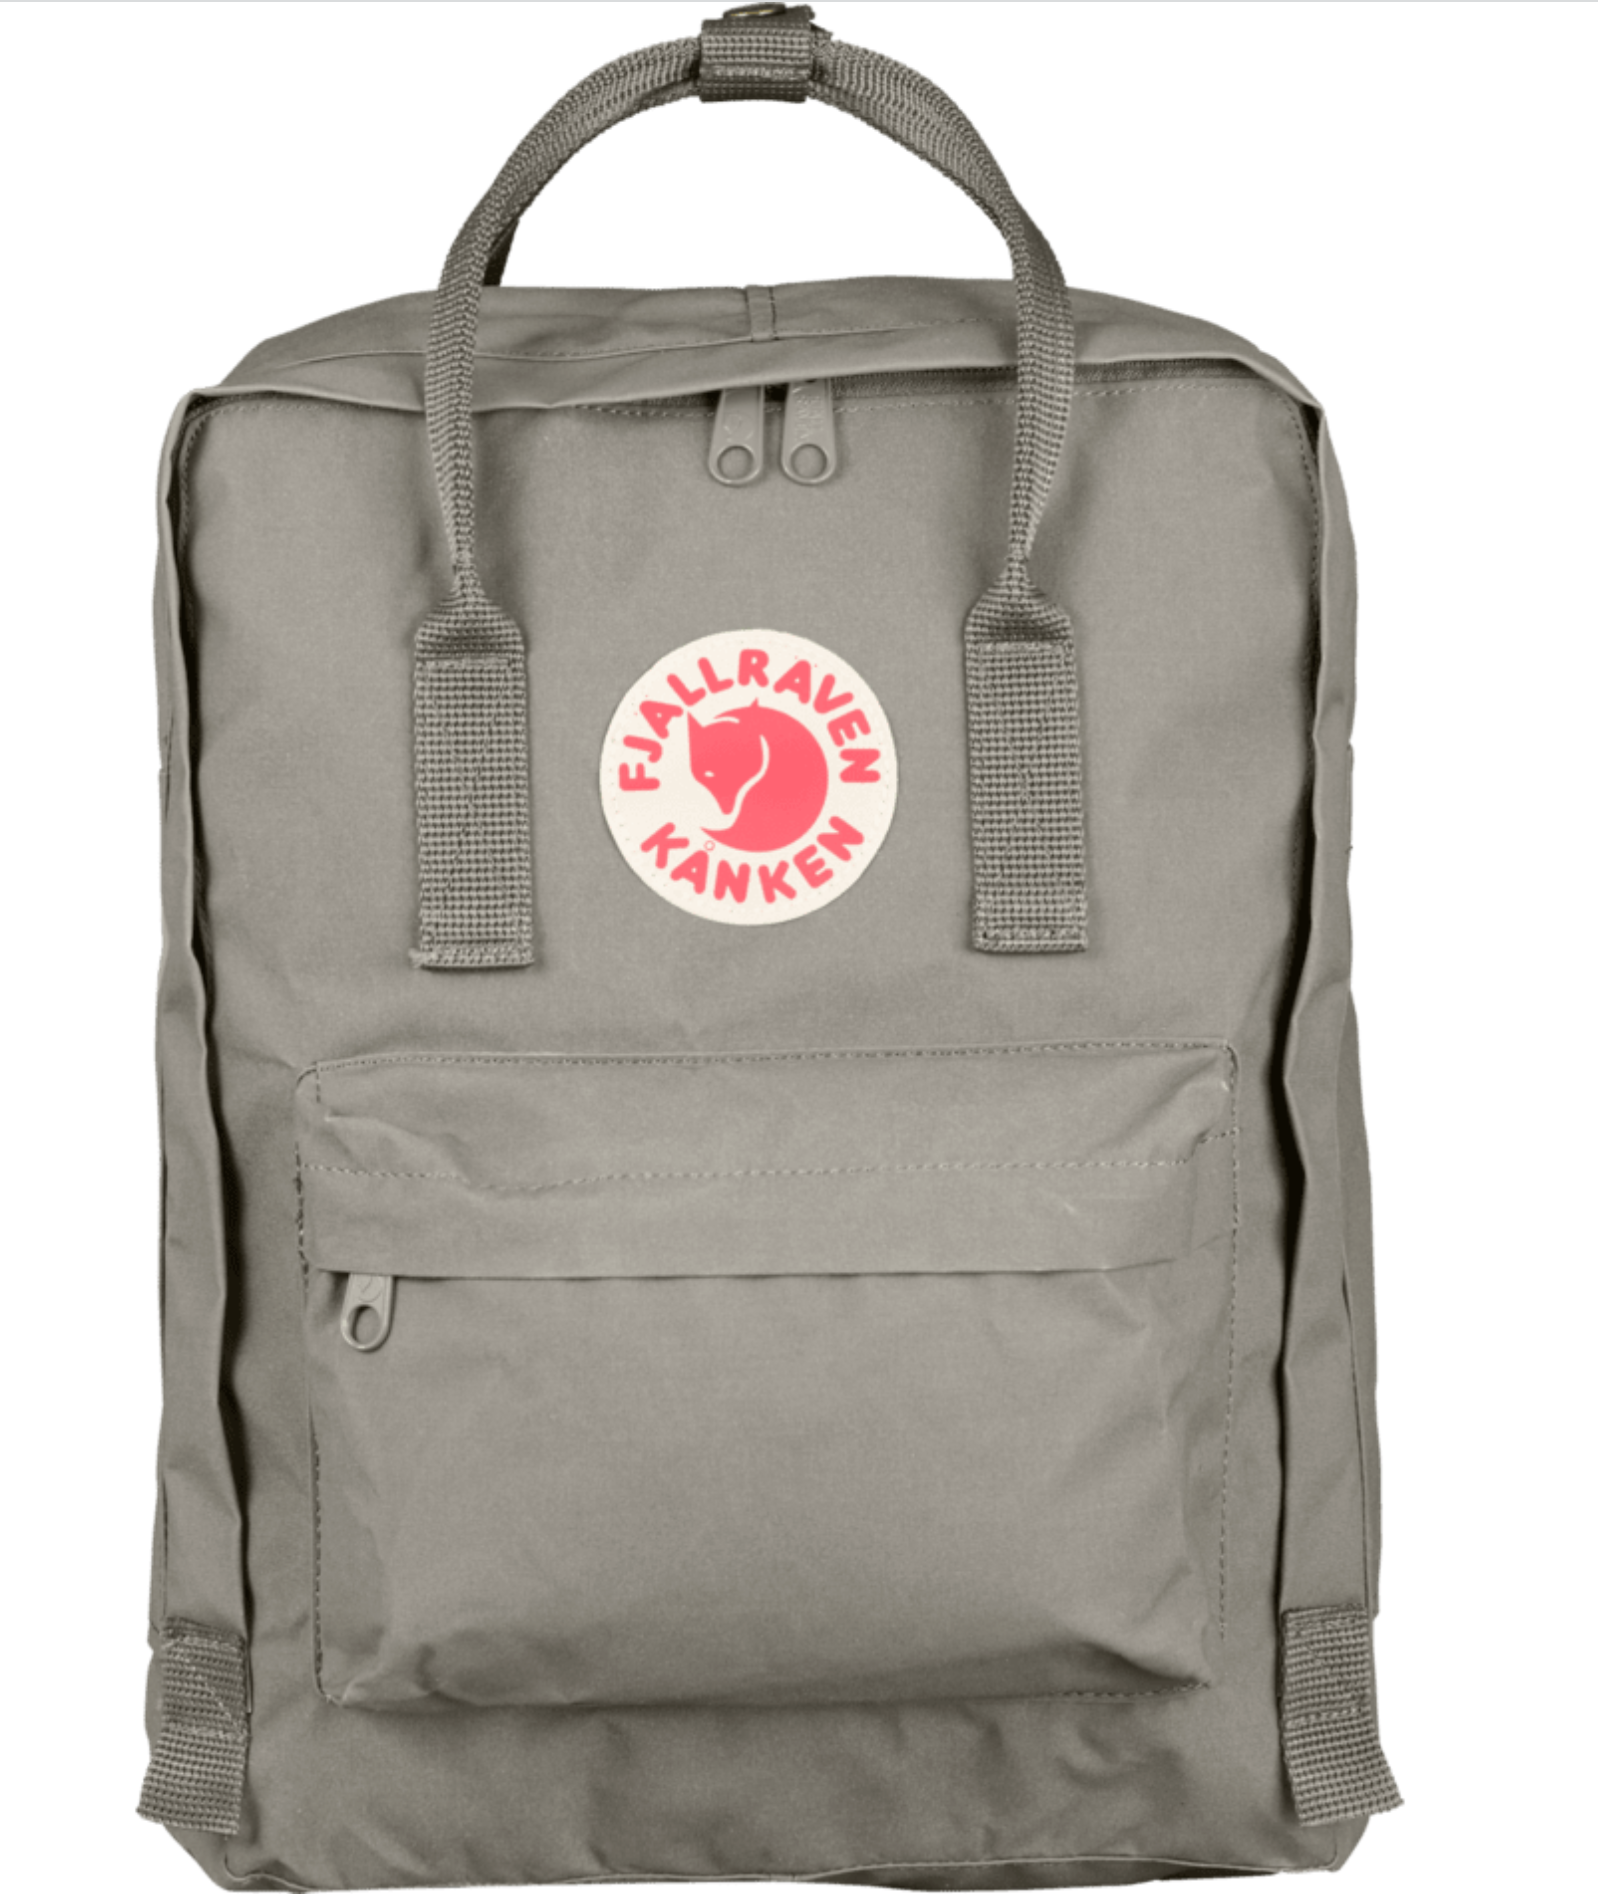 goedkoop Dynamiek Tactiel gevoel Fjallraven Kanken Backpack: Iconic Design Meets Functional Style –  BrandsWalk